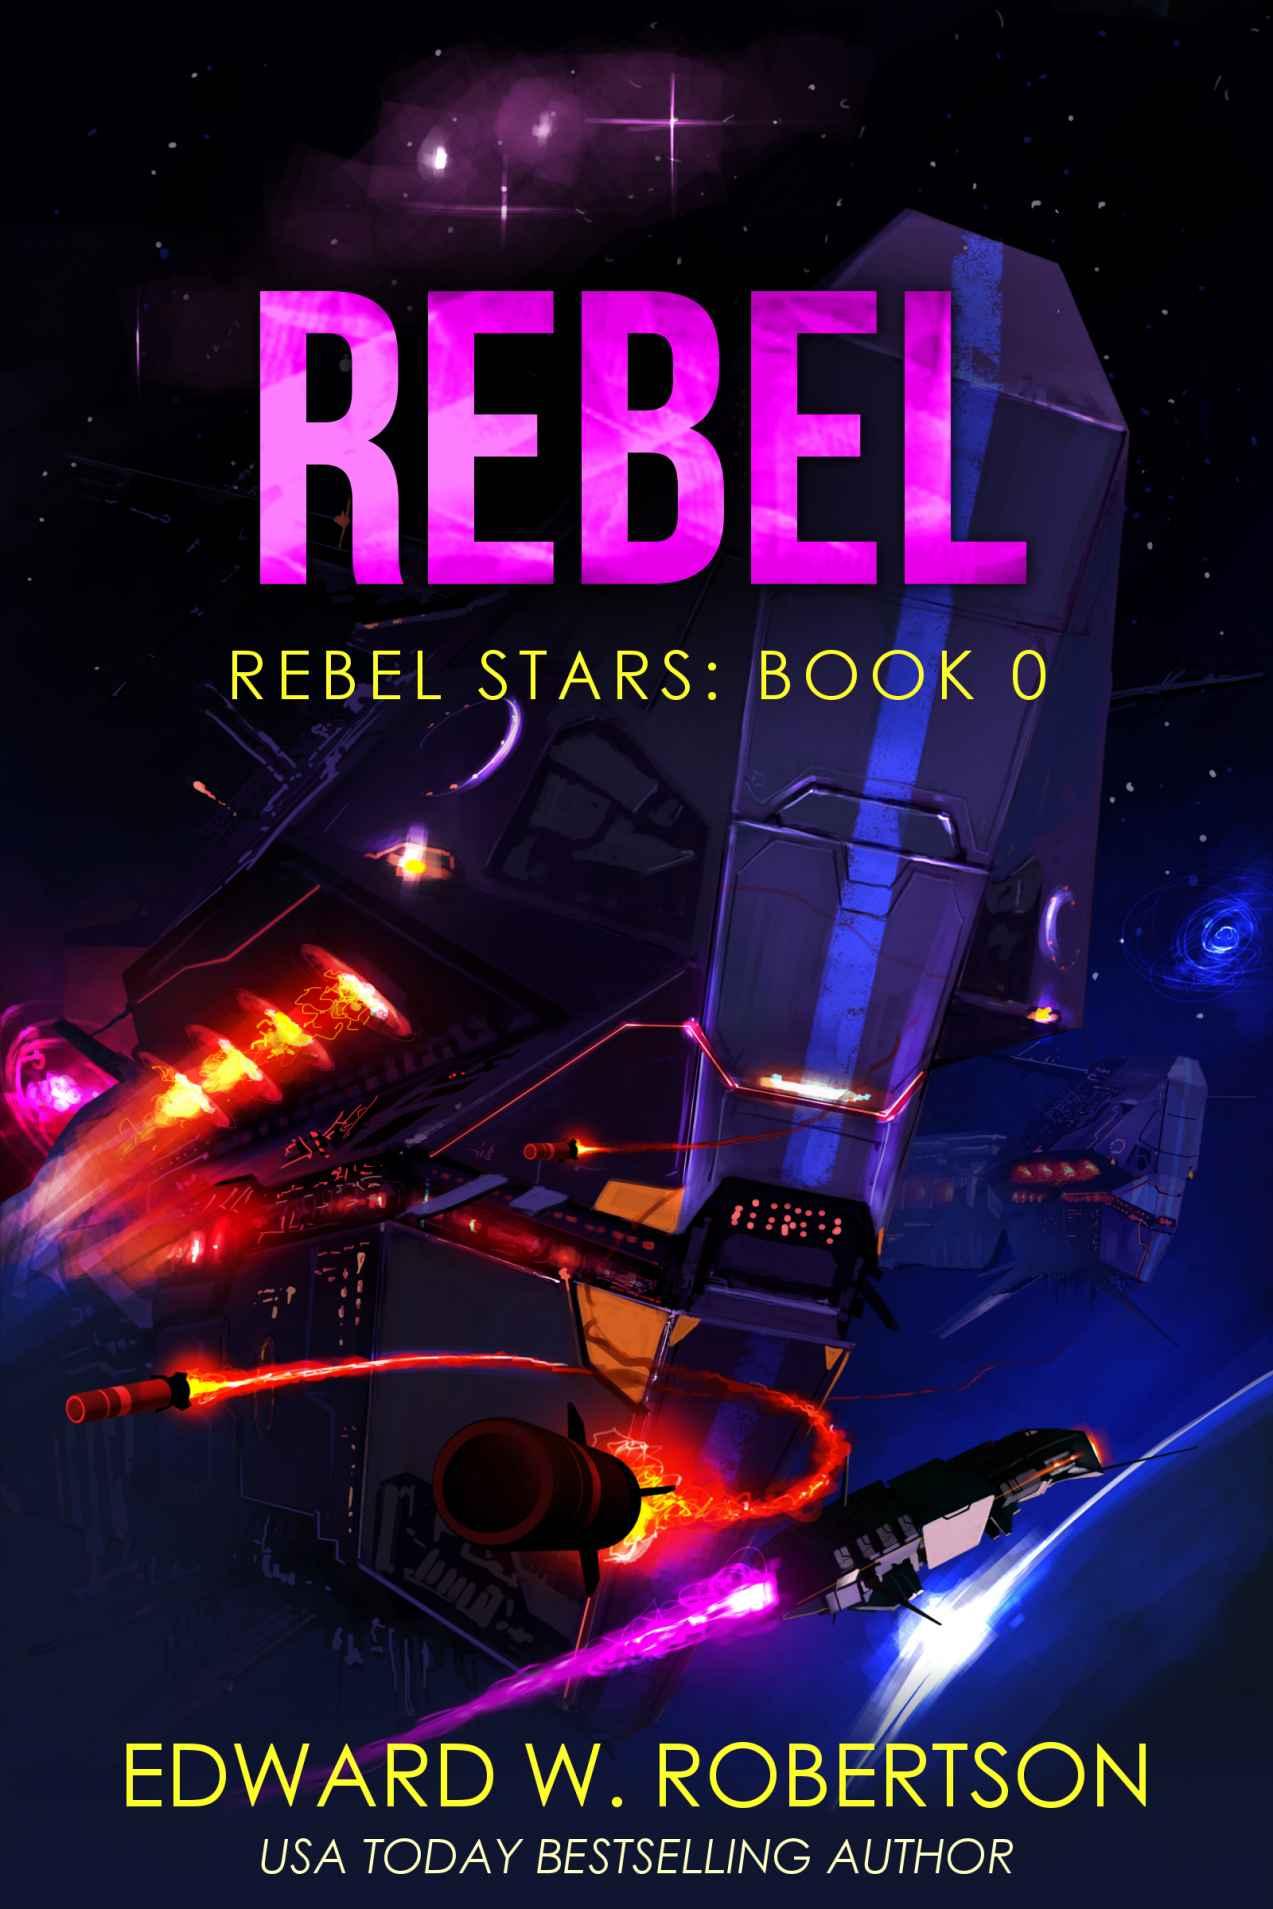 Rebel (Rebel Stars Book 0) by Edward W. Robertson